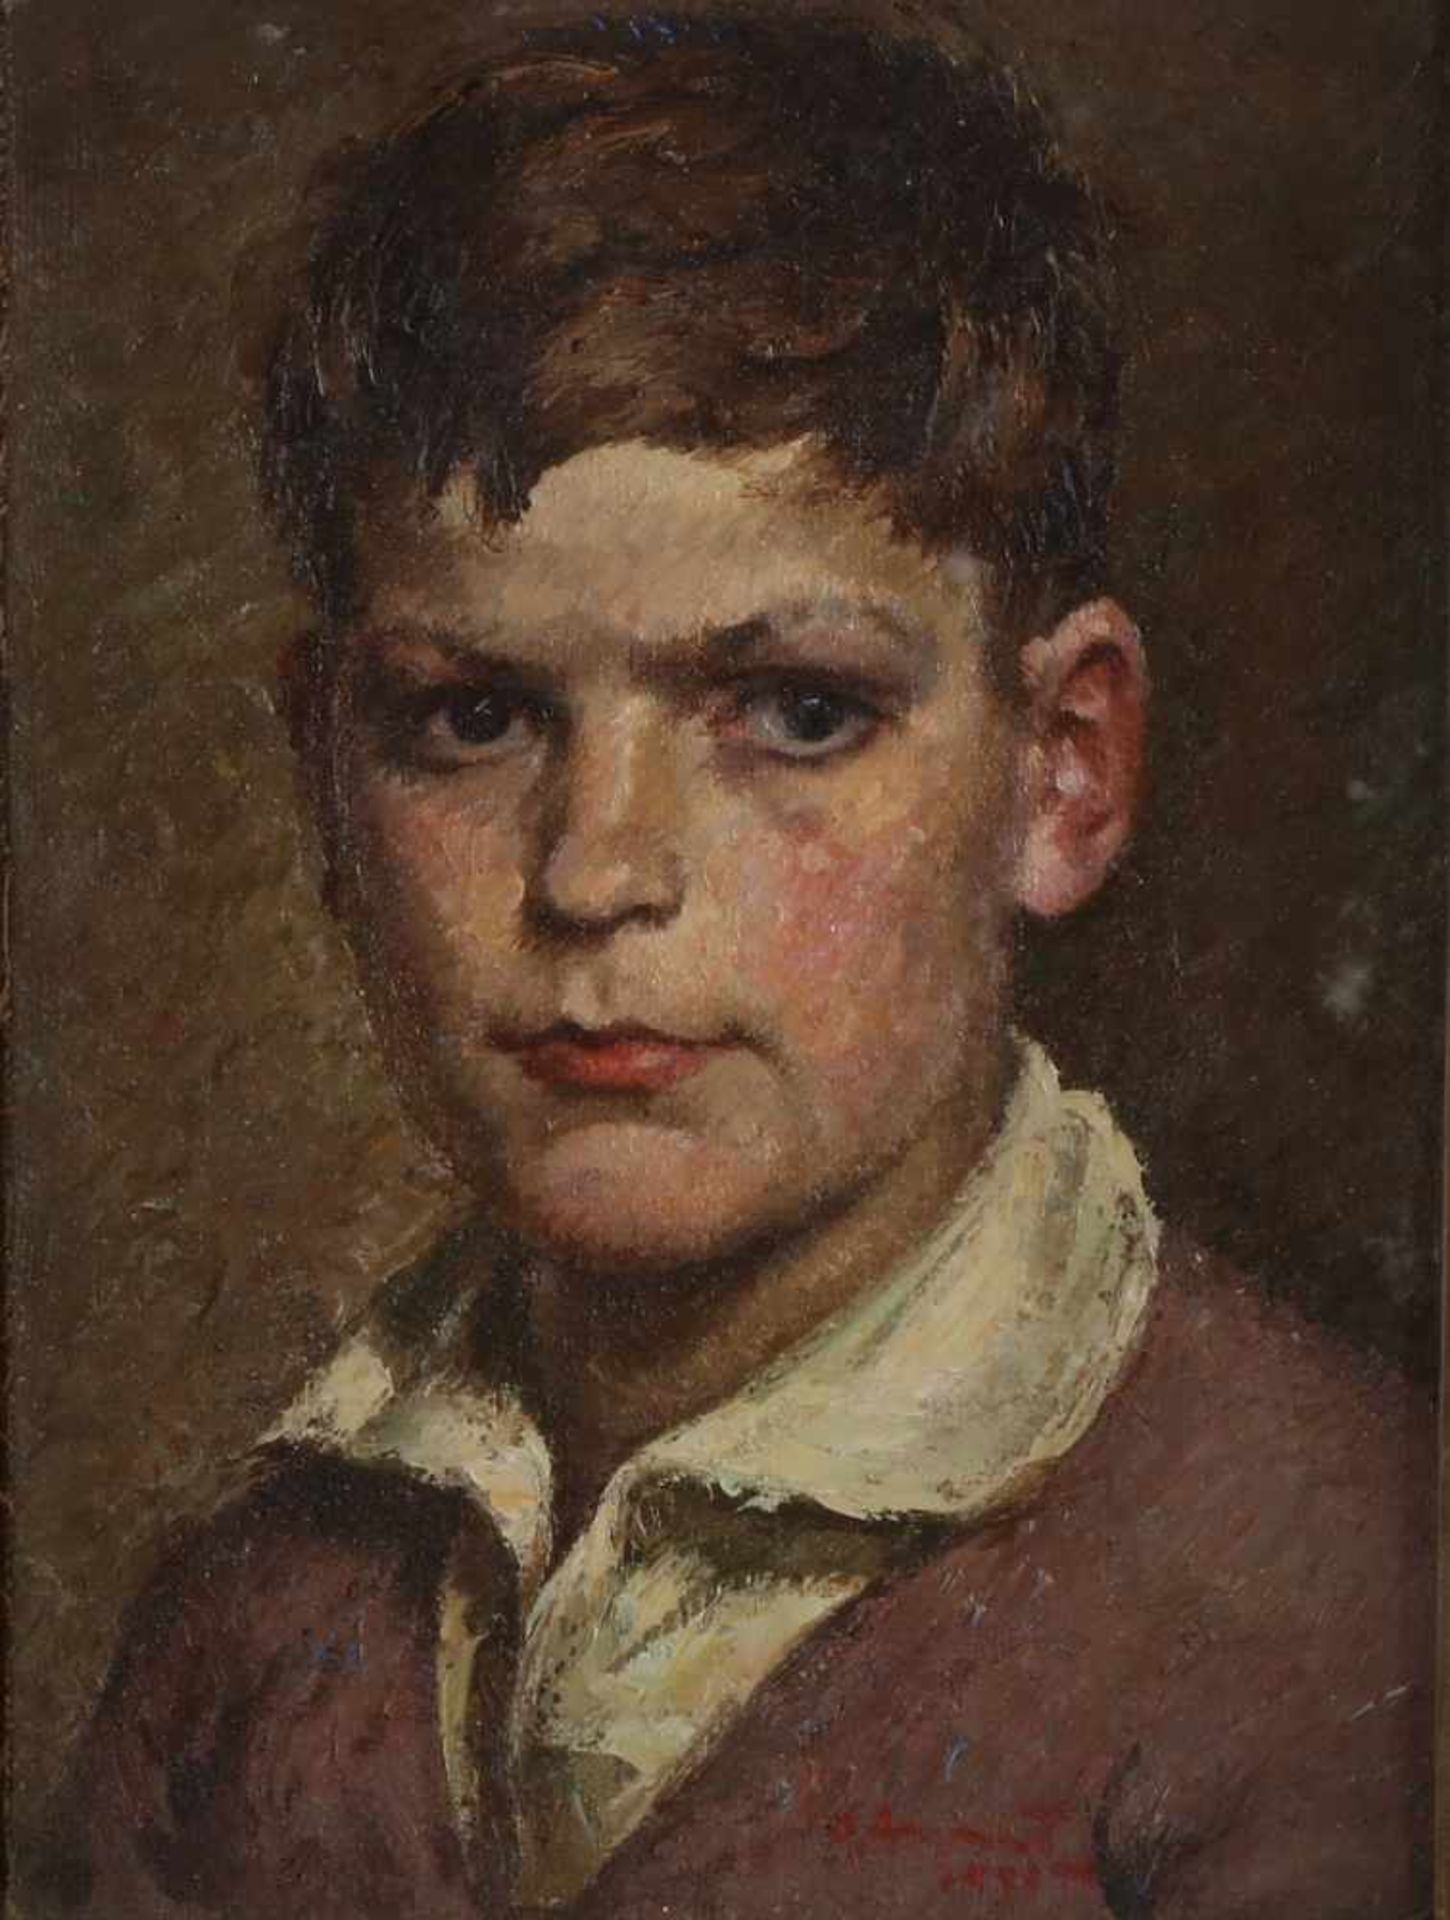 Nicht signiert signiert. Um 1930. Jungenporträt. Ölfarbe auf Holz. Abmessungen: H 40 x B 30 cm. In